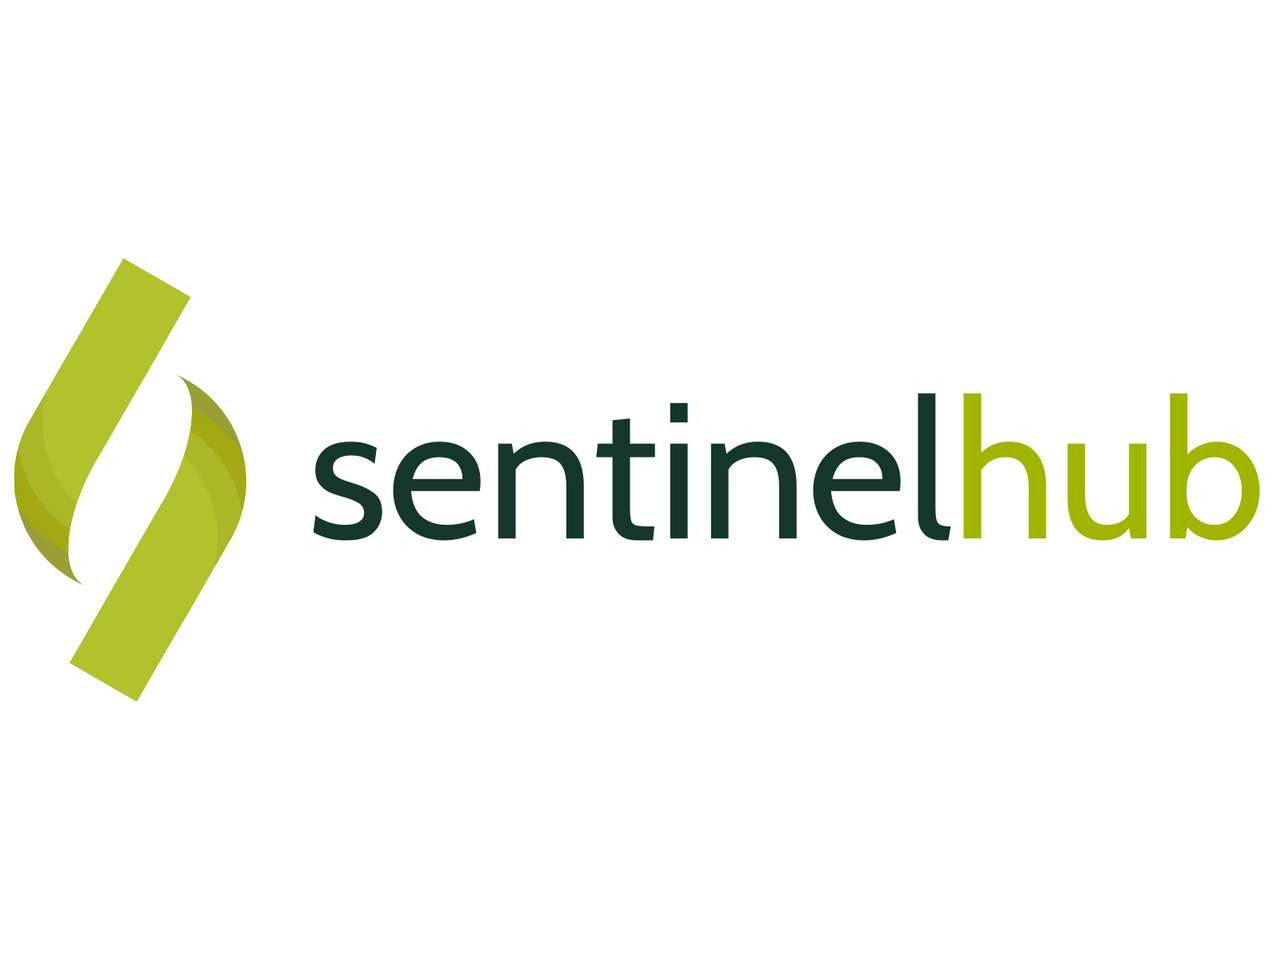 Тест логотипа Sentinel Hub пазл онлайн из фото